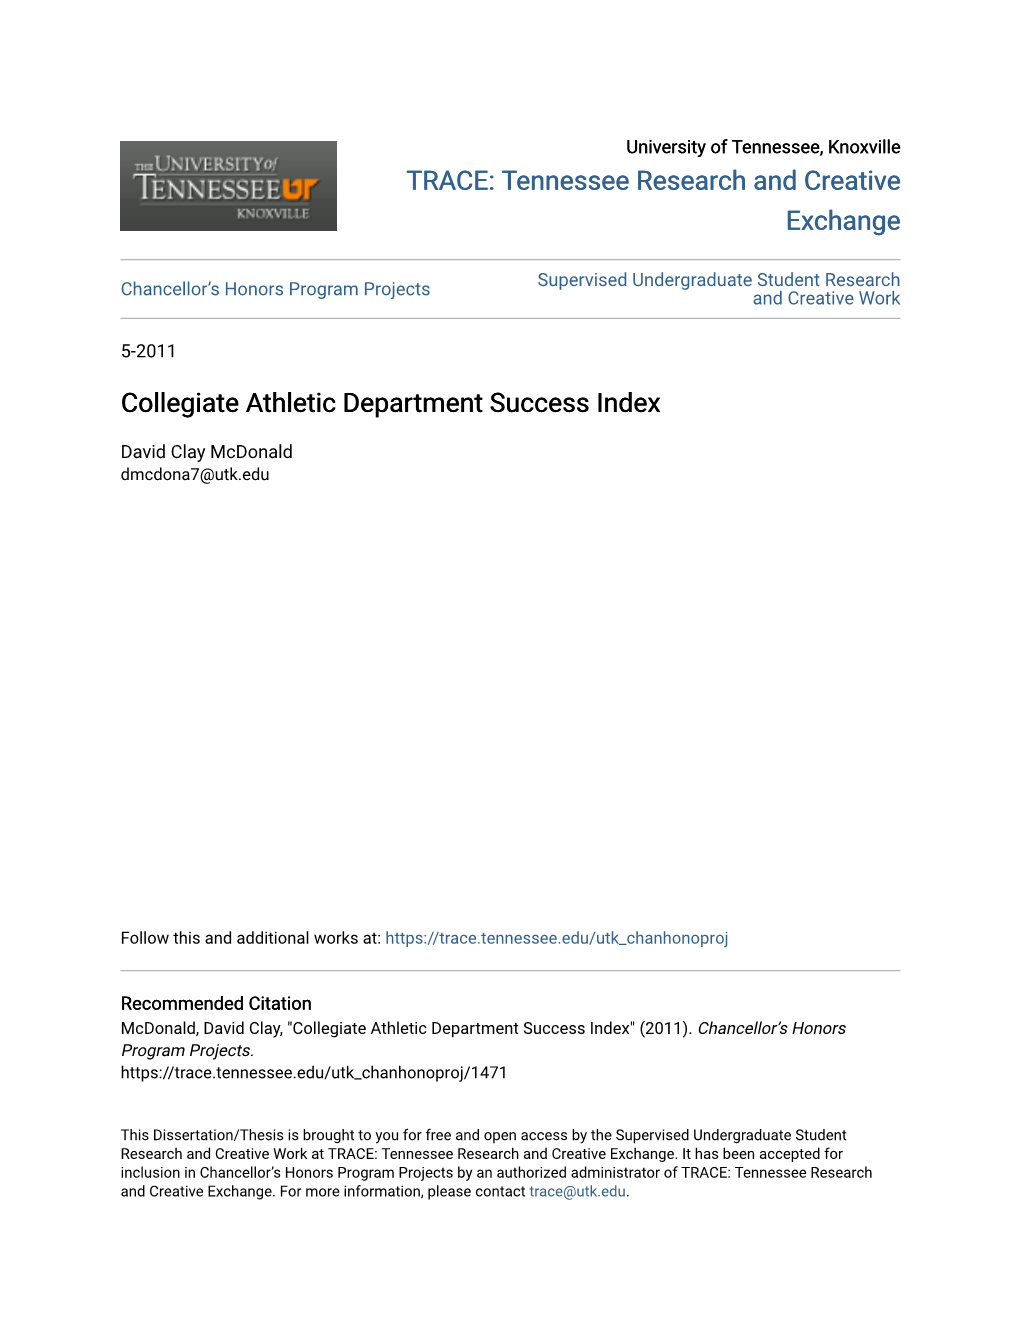 Collegiate Athletic Department Success Index